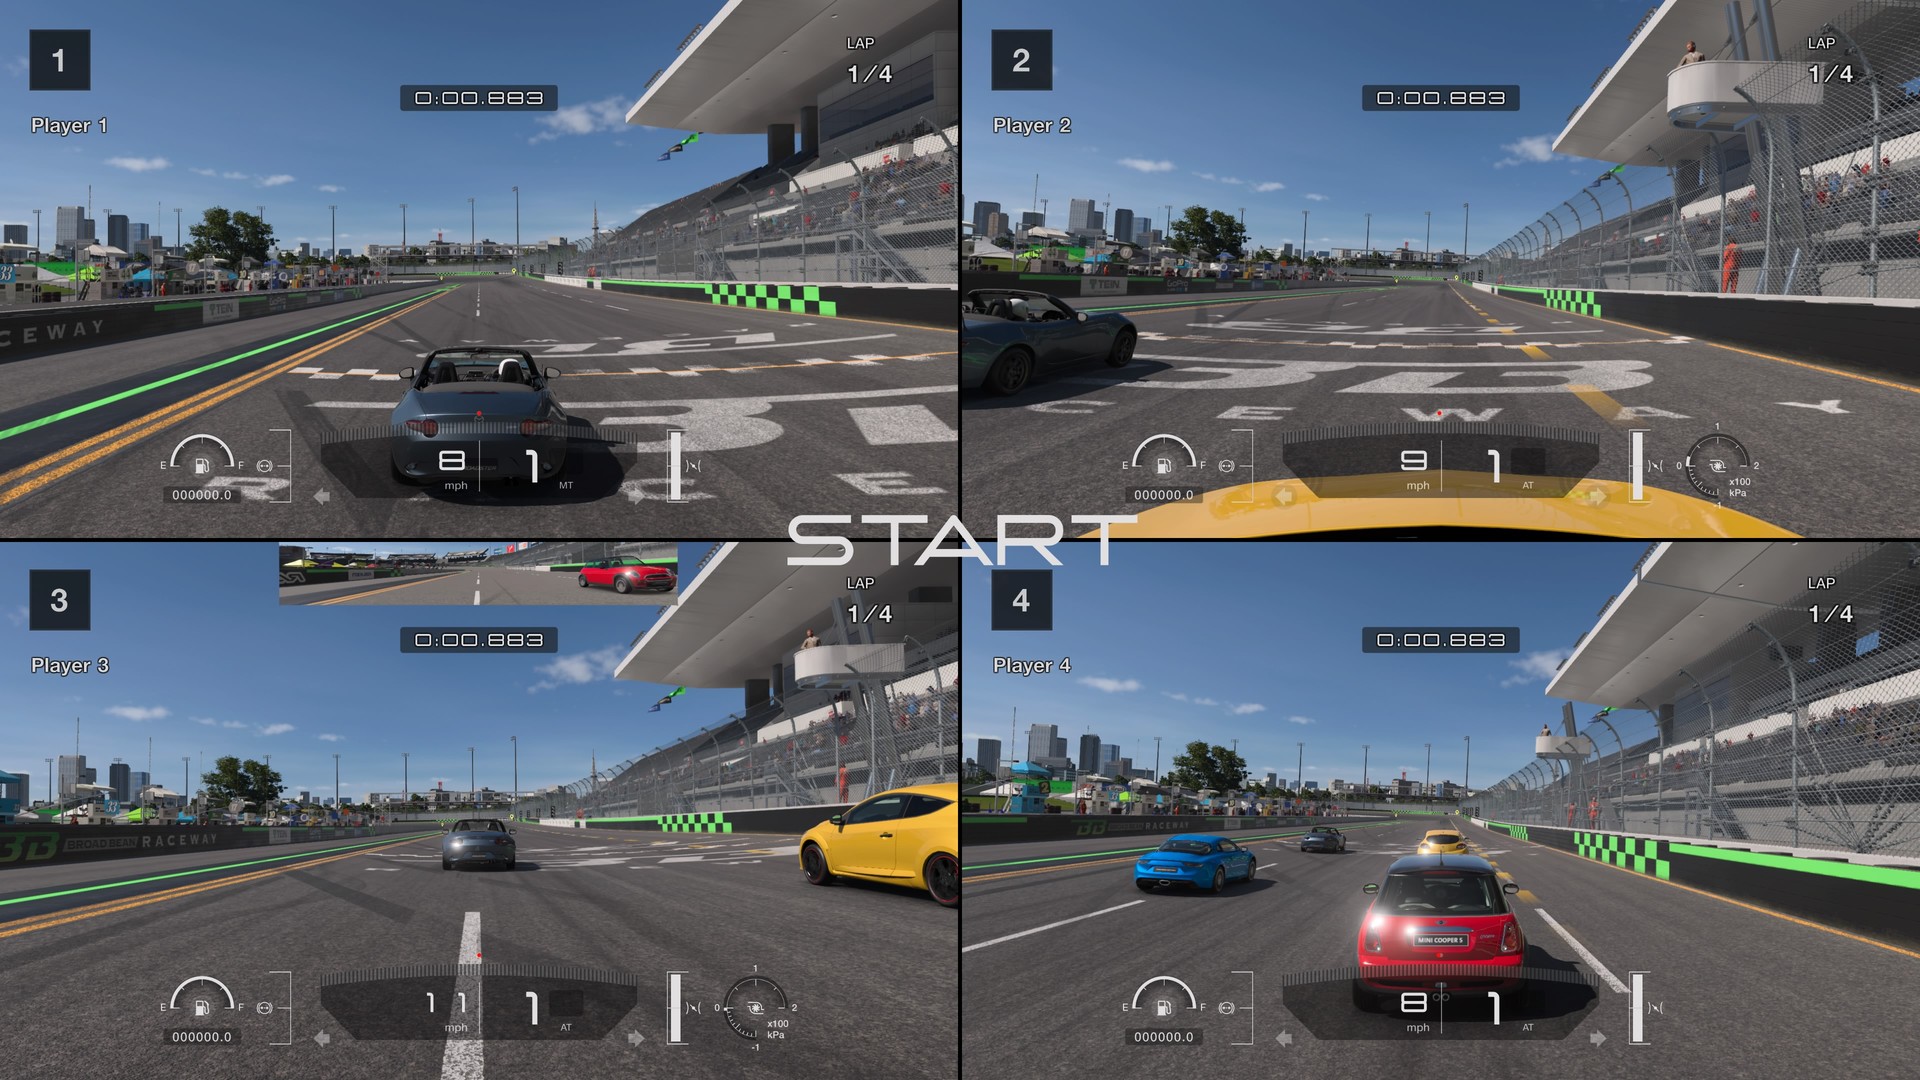 Atualização de Gran Turismo 7 adiciona novos carros e circuito - Outer Space